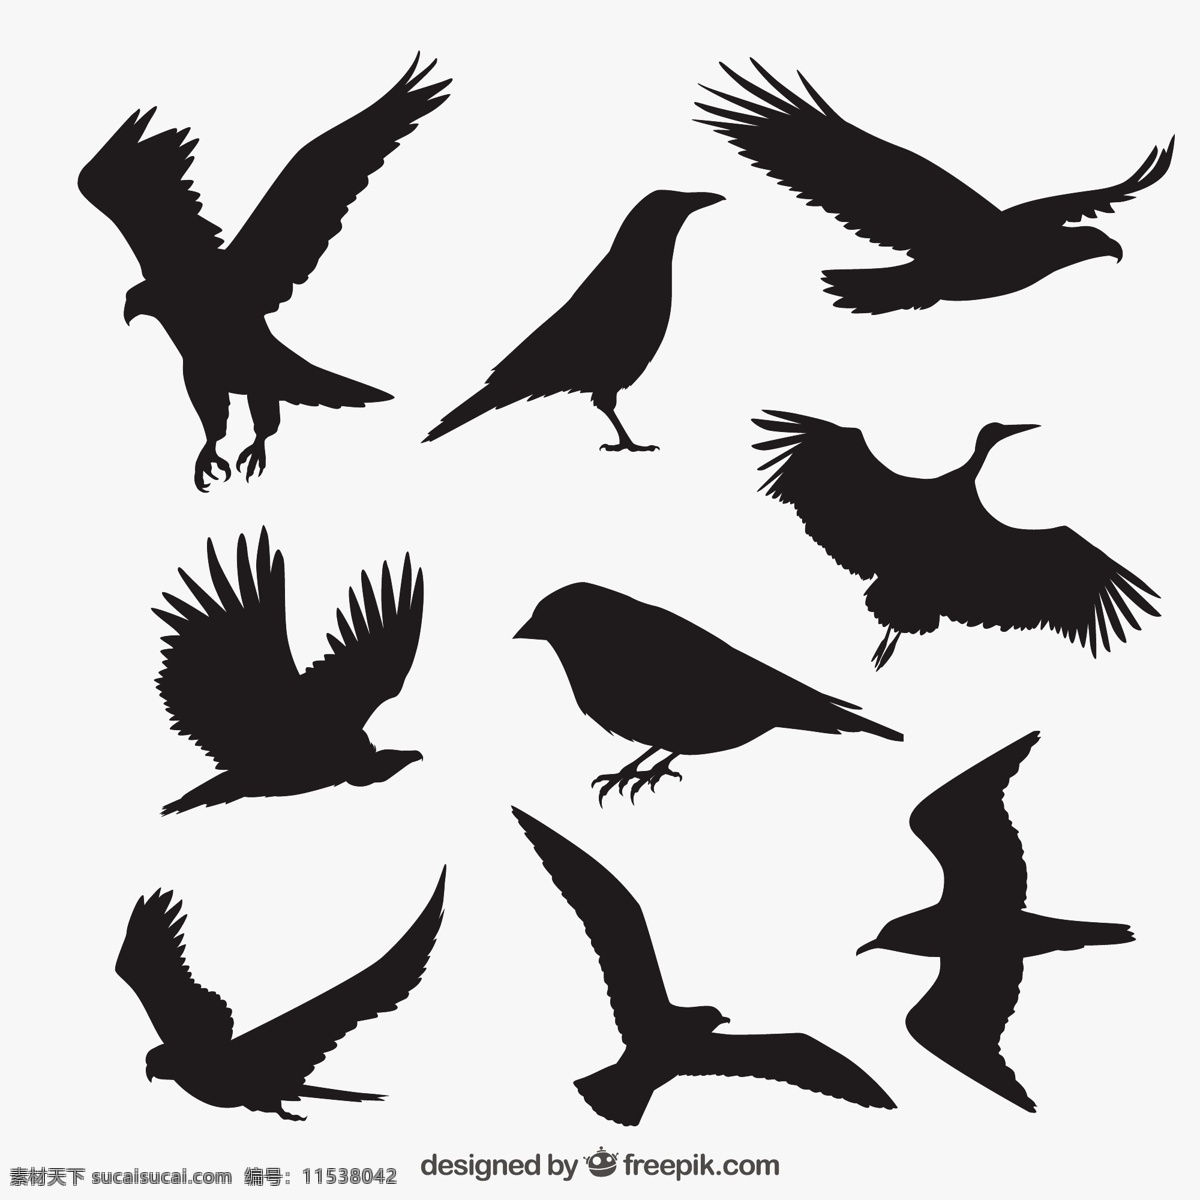 鸟剪影 自然 动物 翅膀 羽毛 丛林 黑色 集团 动物园 剪影 野生 野生动物 麻雀 大纲